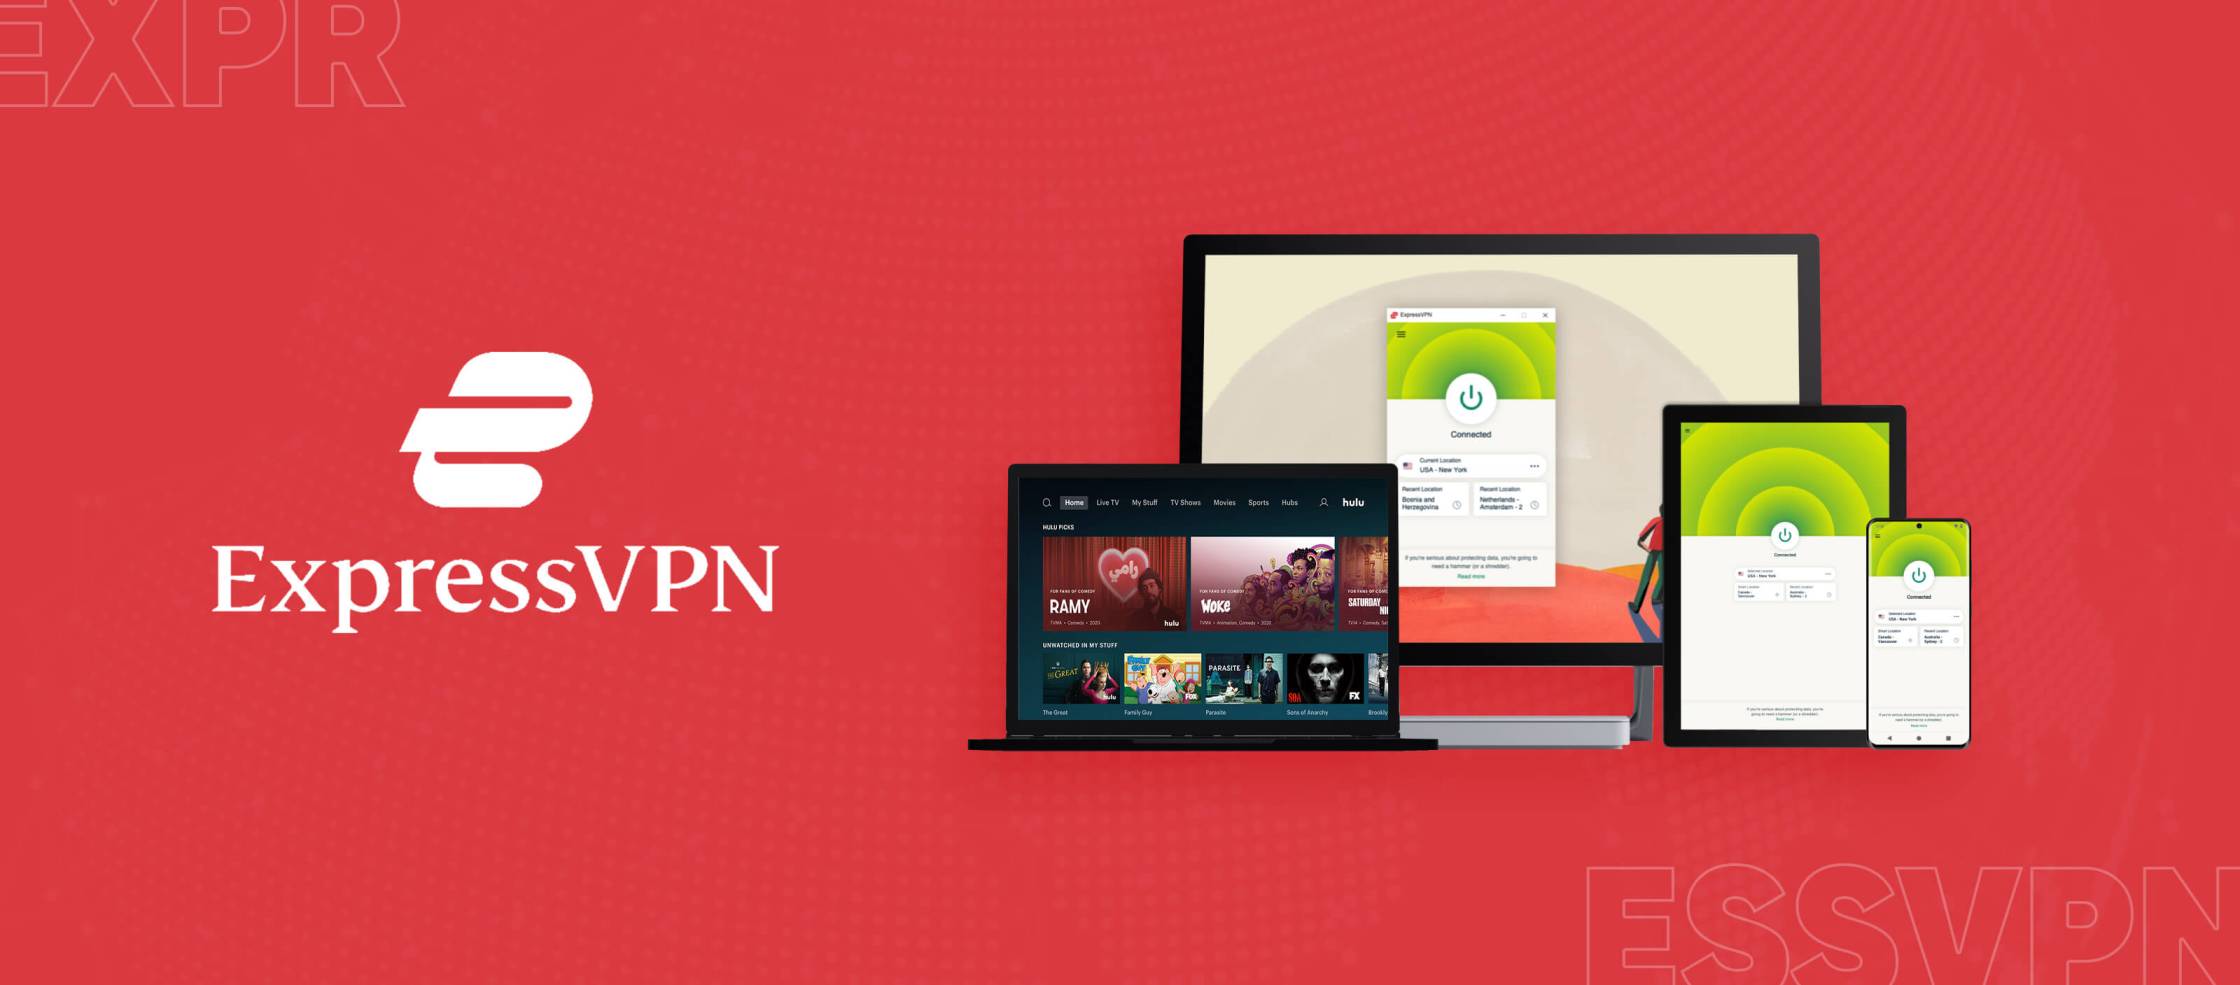  ExpressVPN-Hulu è una combinazione di due servizi, ExpressVPN e Hulu, che offrono una connessione sicura e veloce a Hulu, un servizio di streaming di contenuti video. ExpressVPN è un servizio di rete privata virtuale (VPN) che protegge la tua connessione Internet e ti consente di accedere a contenuti bloccati geograficamente. Hulu è un servizio di streaming che offre una vasta gamma 